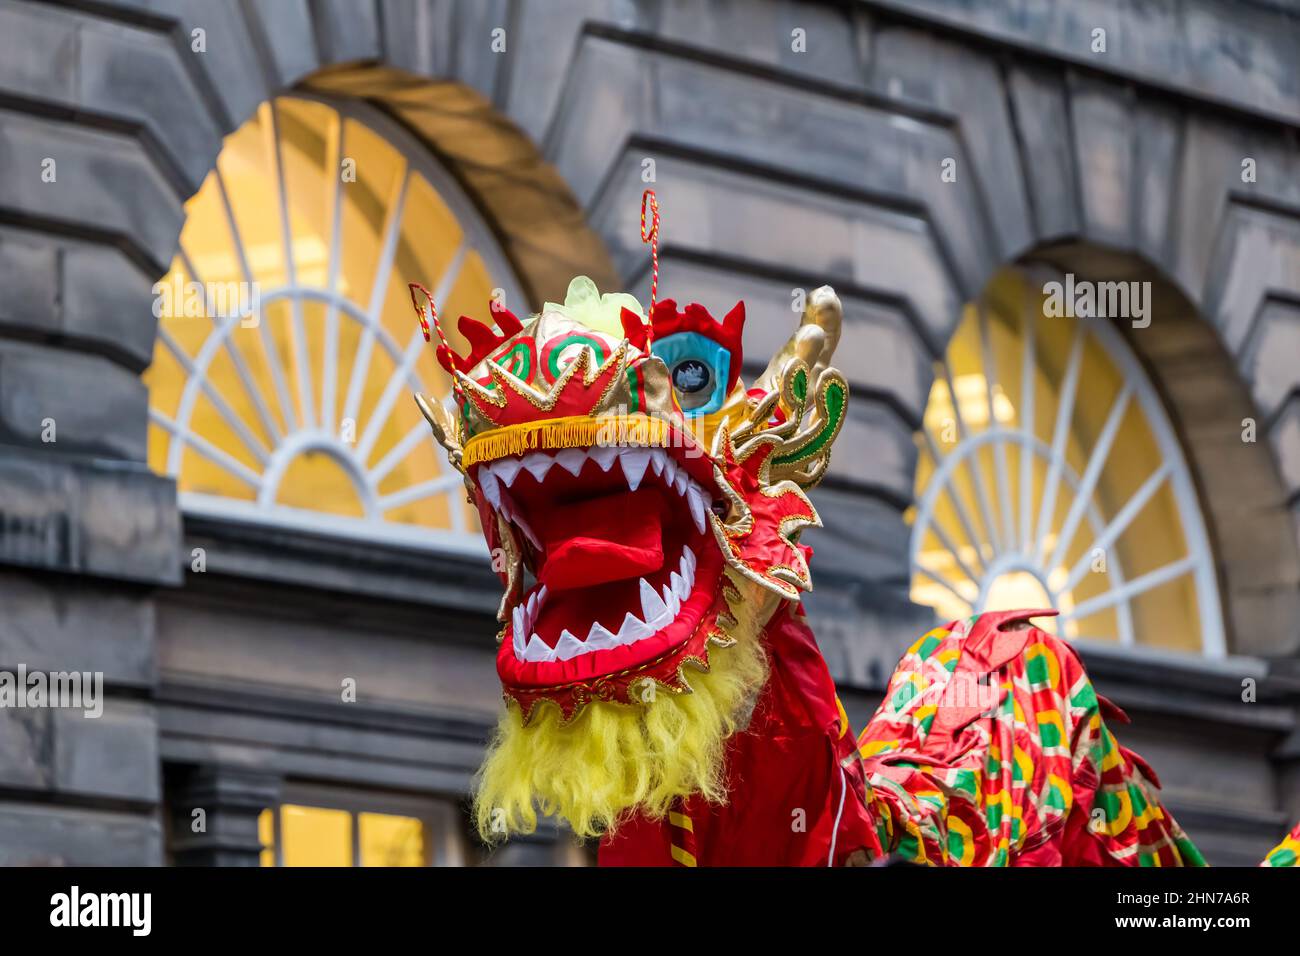 Fête du nouvel an chinois avec un dragon coloré, City Chambers, Édimbourg, Écosse, Royaume-Uni Banque D'Images